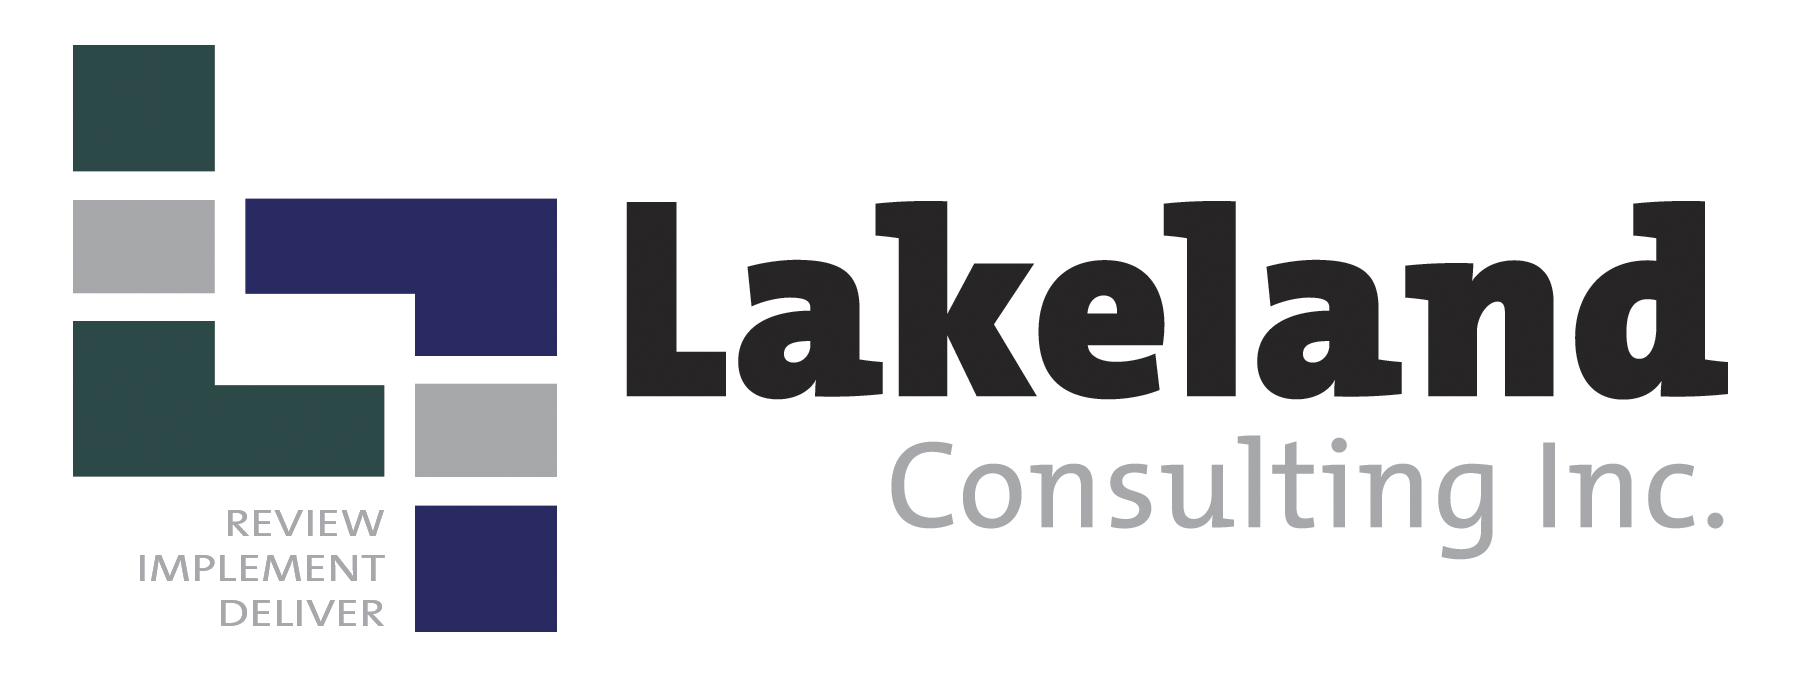 Lakeland Consulting Inc